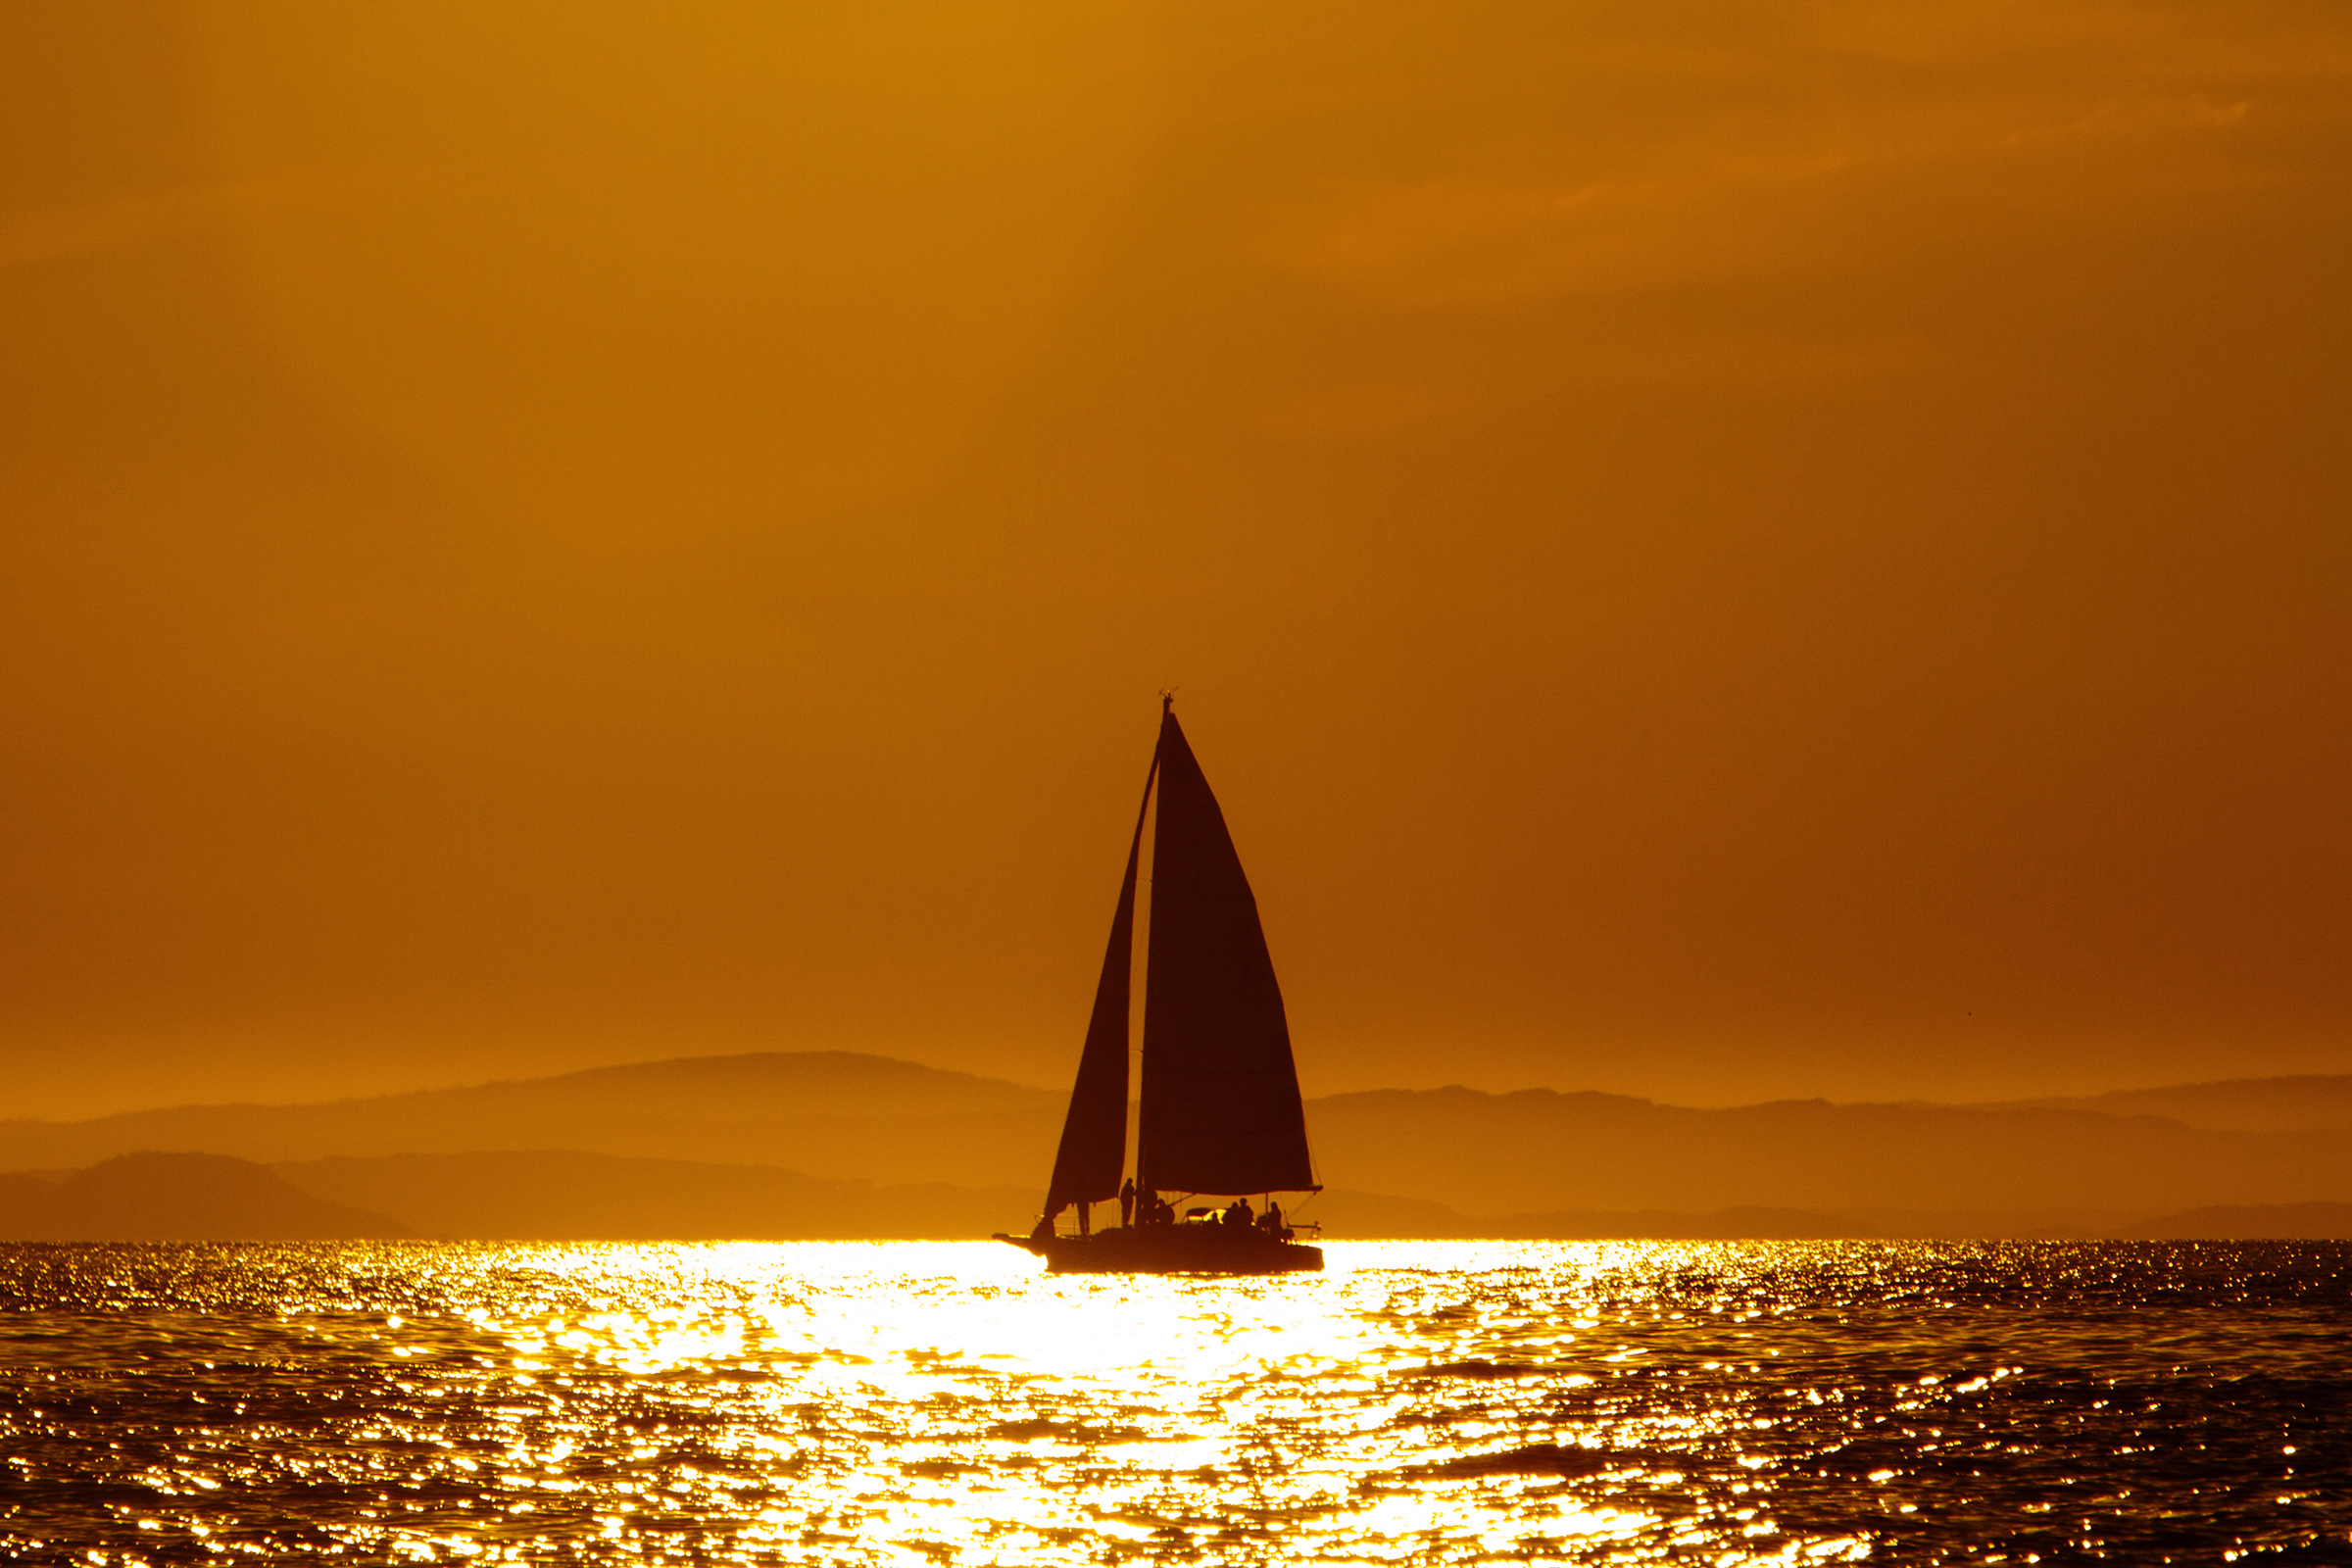 Sailing photo